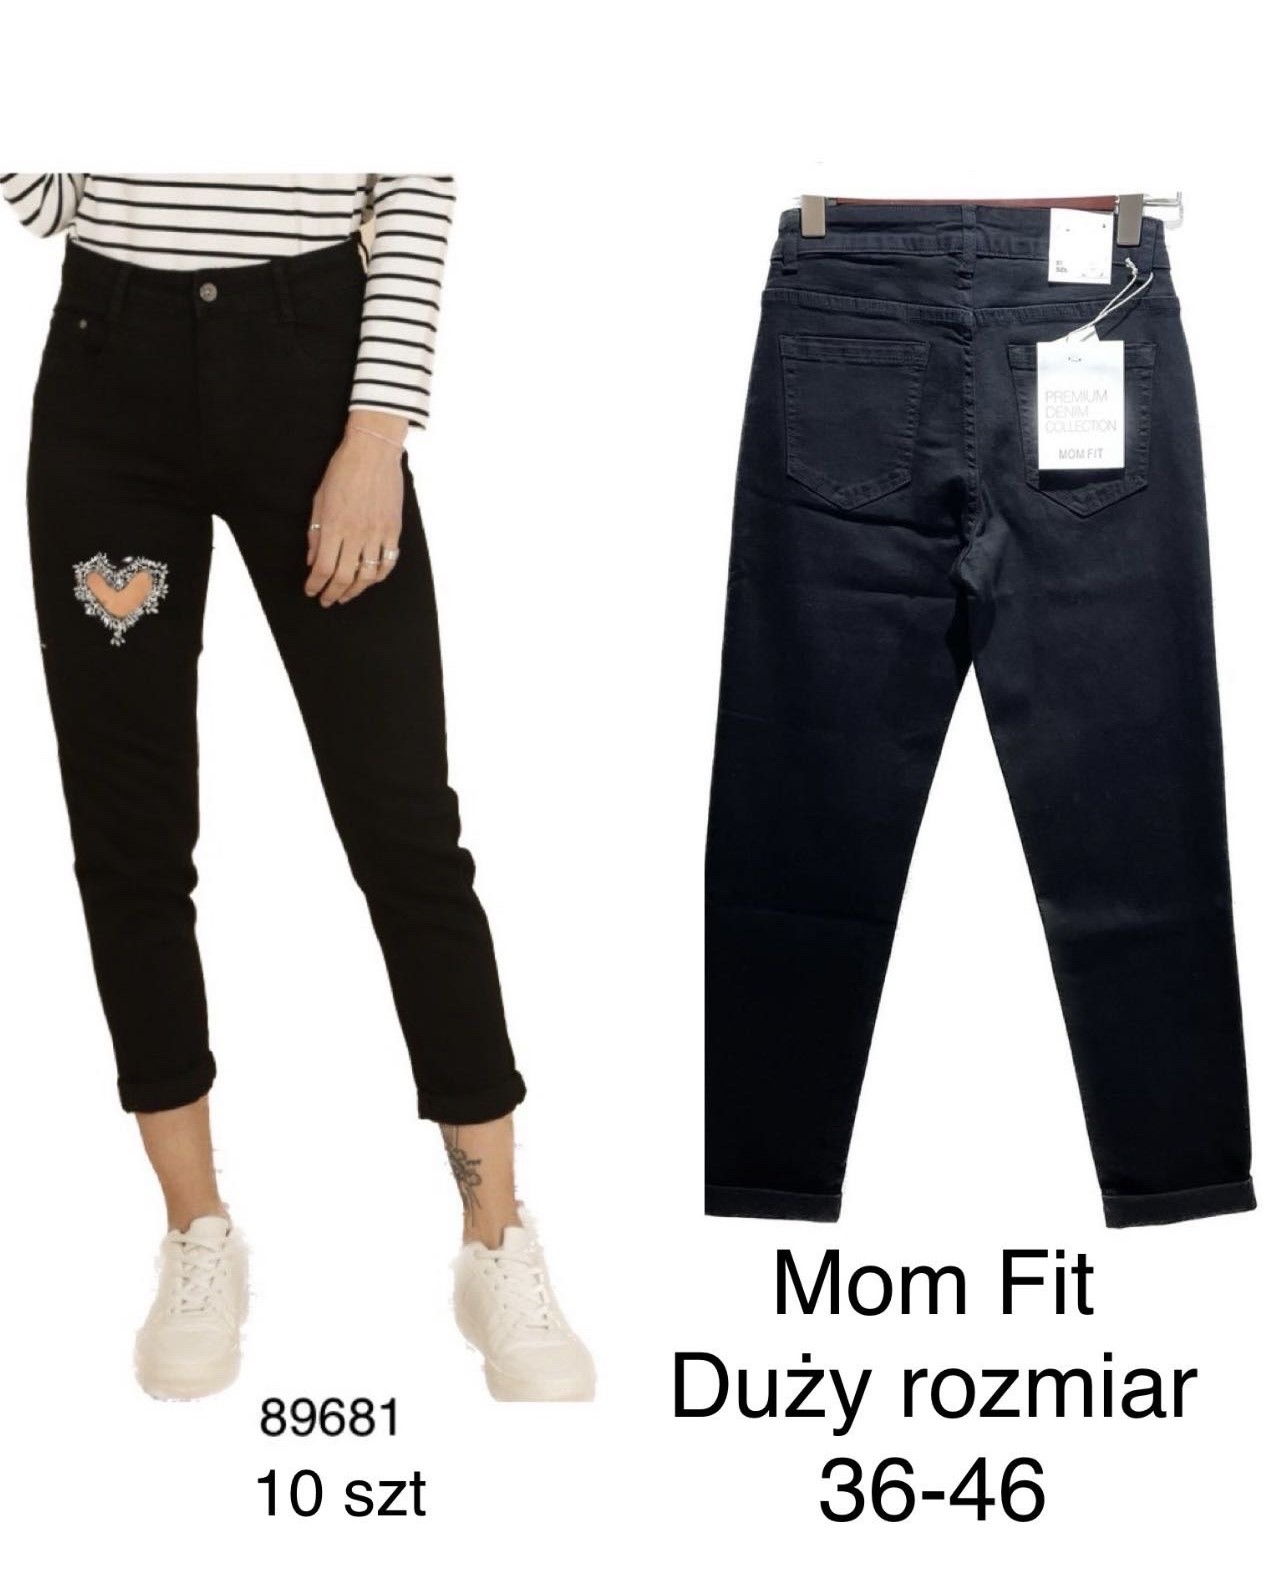 Spodnie damskie jeans duże .Roz X36-46 . Paczka 10szt